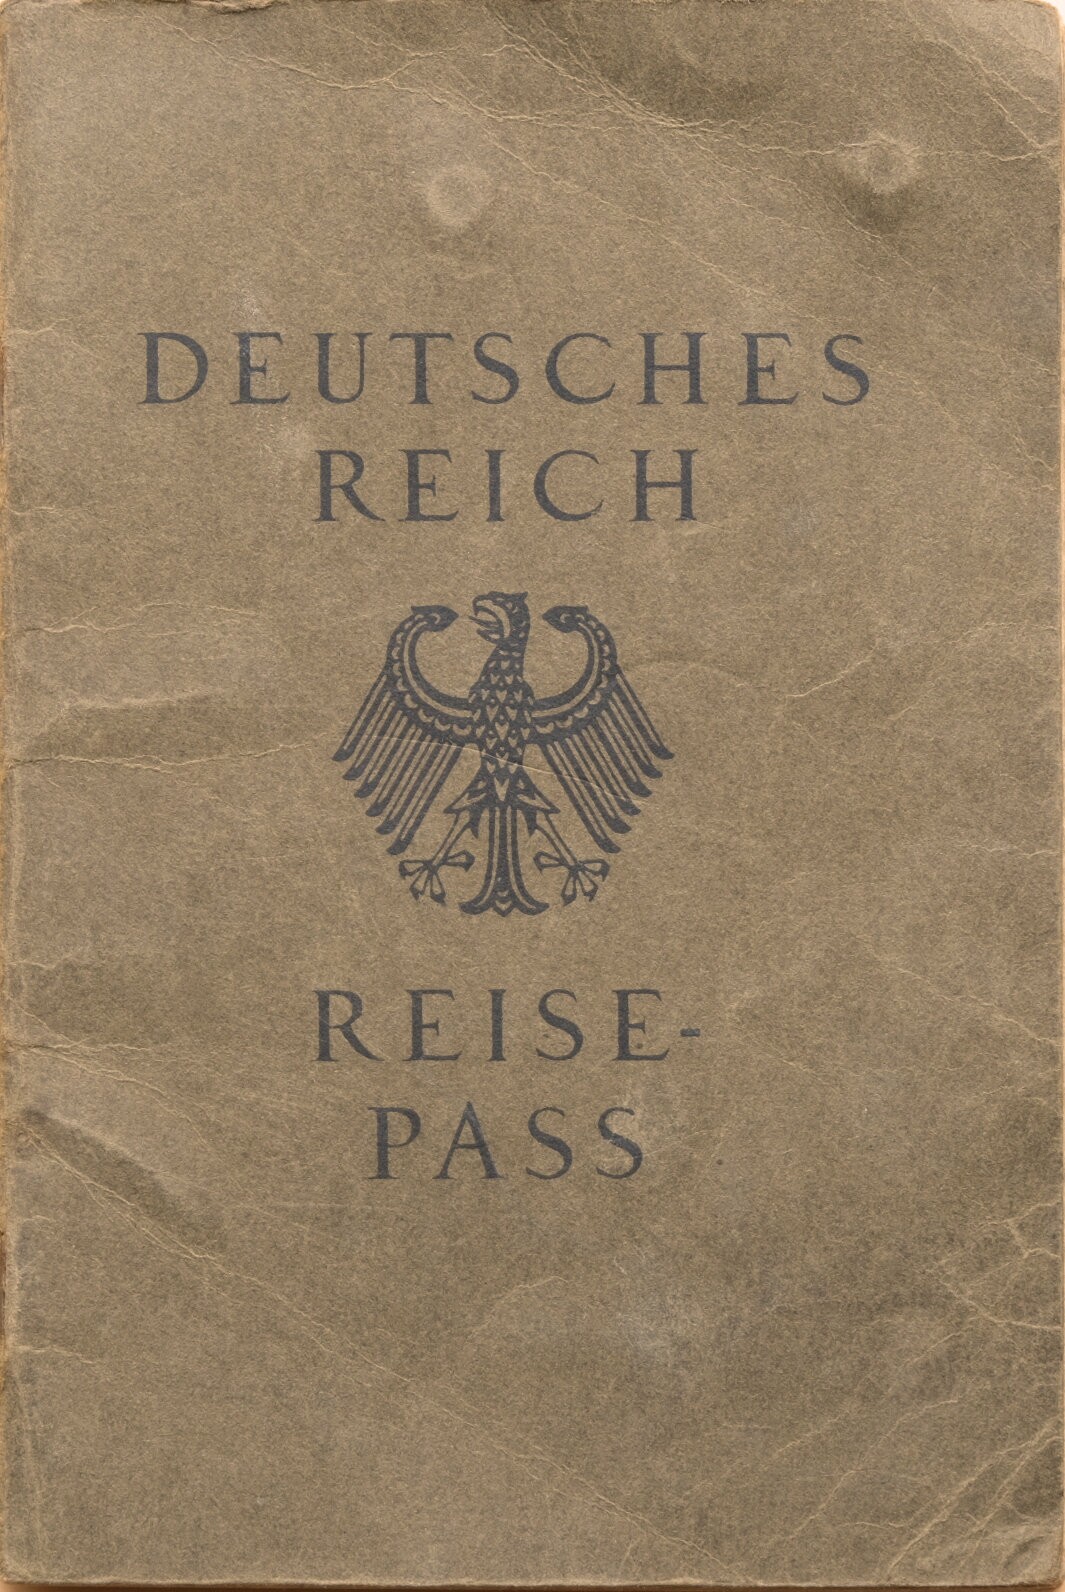 Reisepass von Josef Koll aus Frankfurt (Volkskunde- und Freilichtmuseum Roscheider Hof CC0)